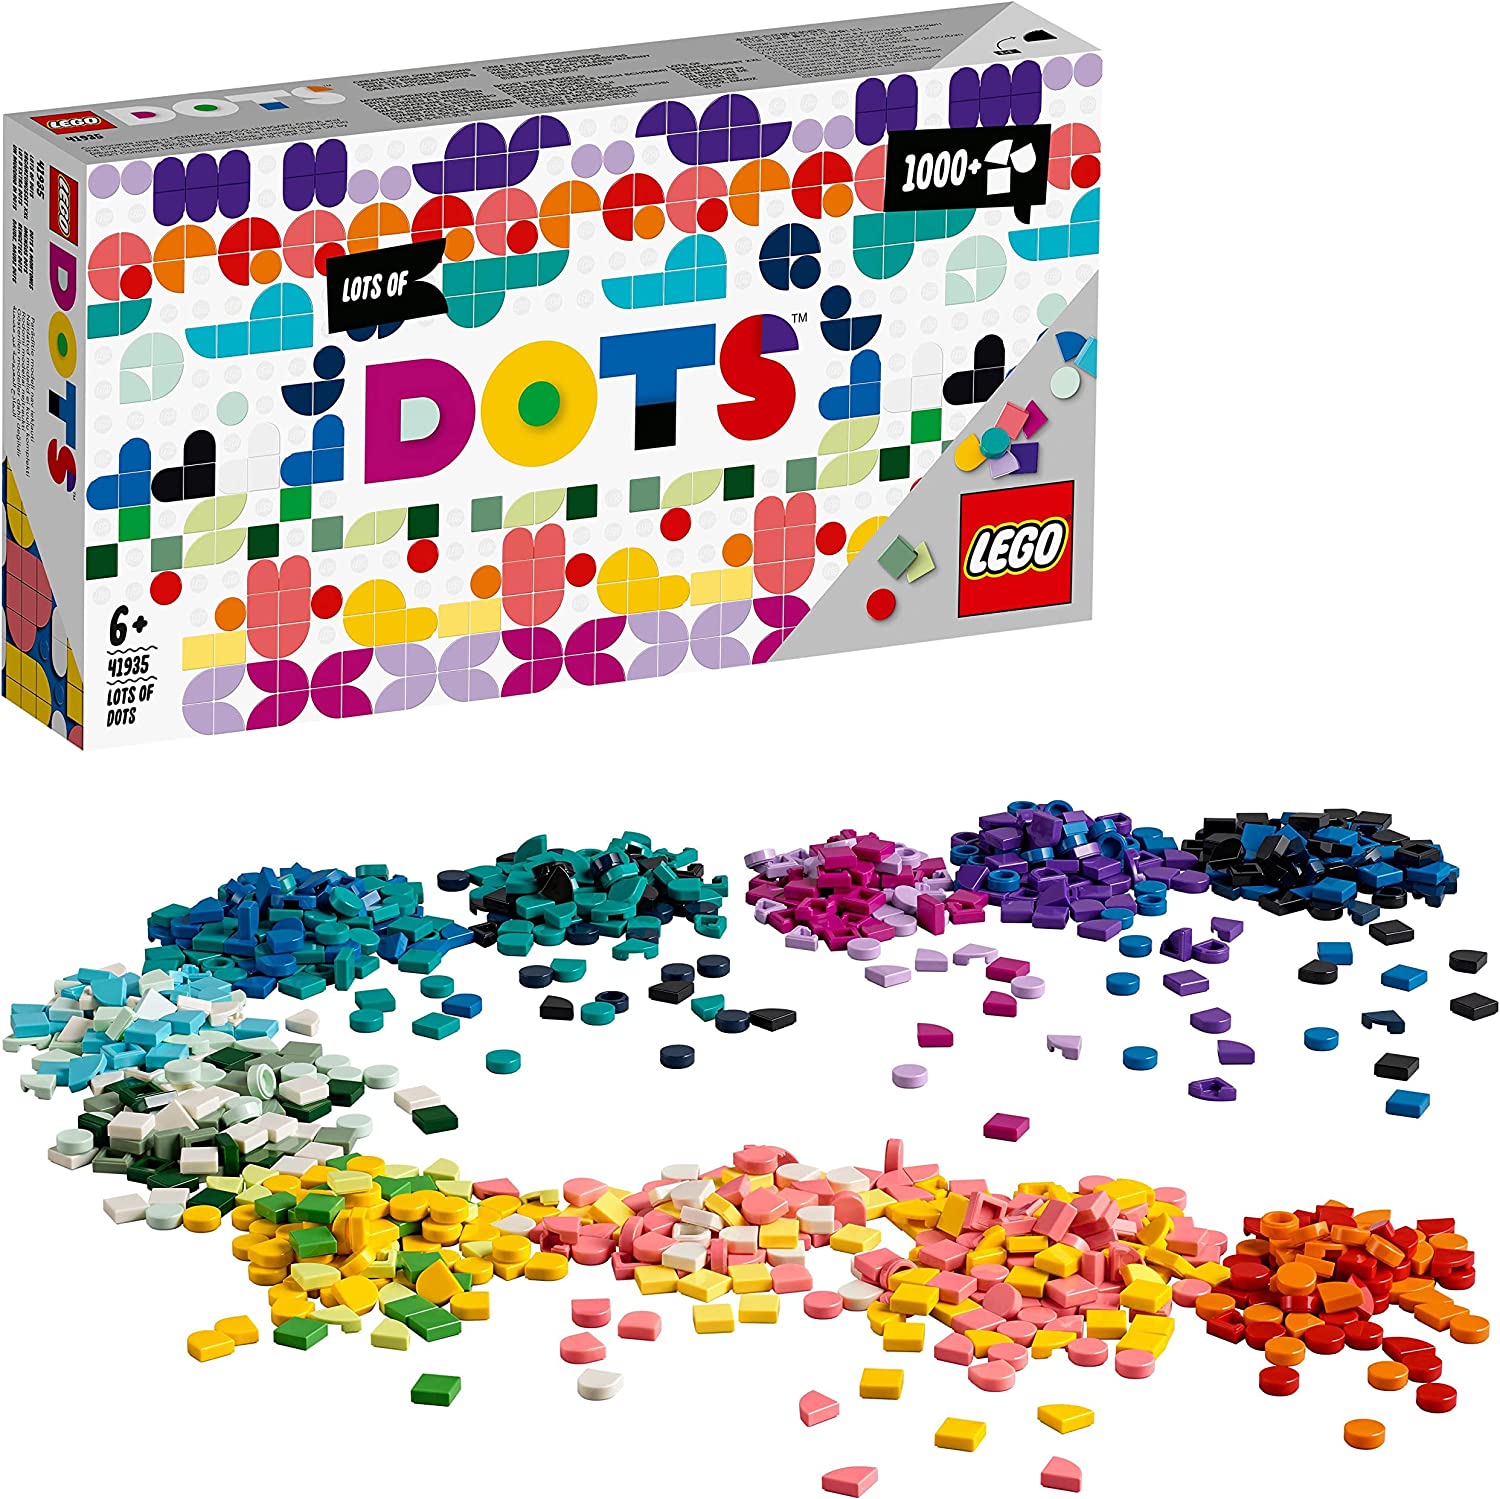 LEGO® Dots va in pensione